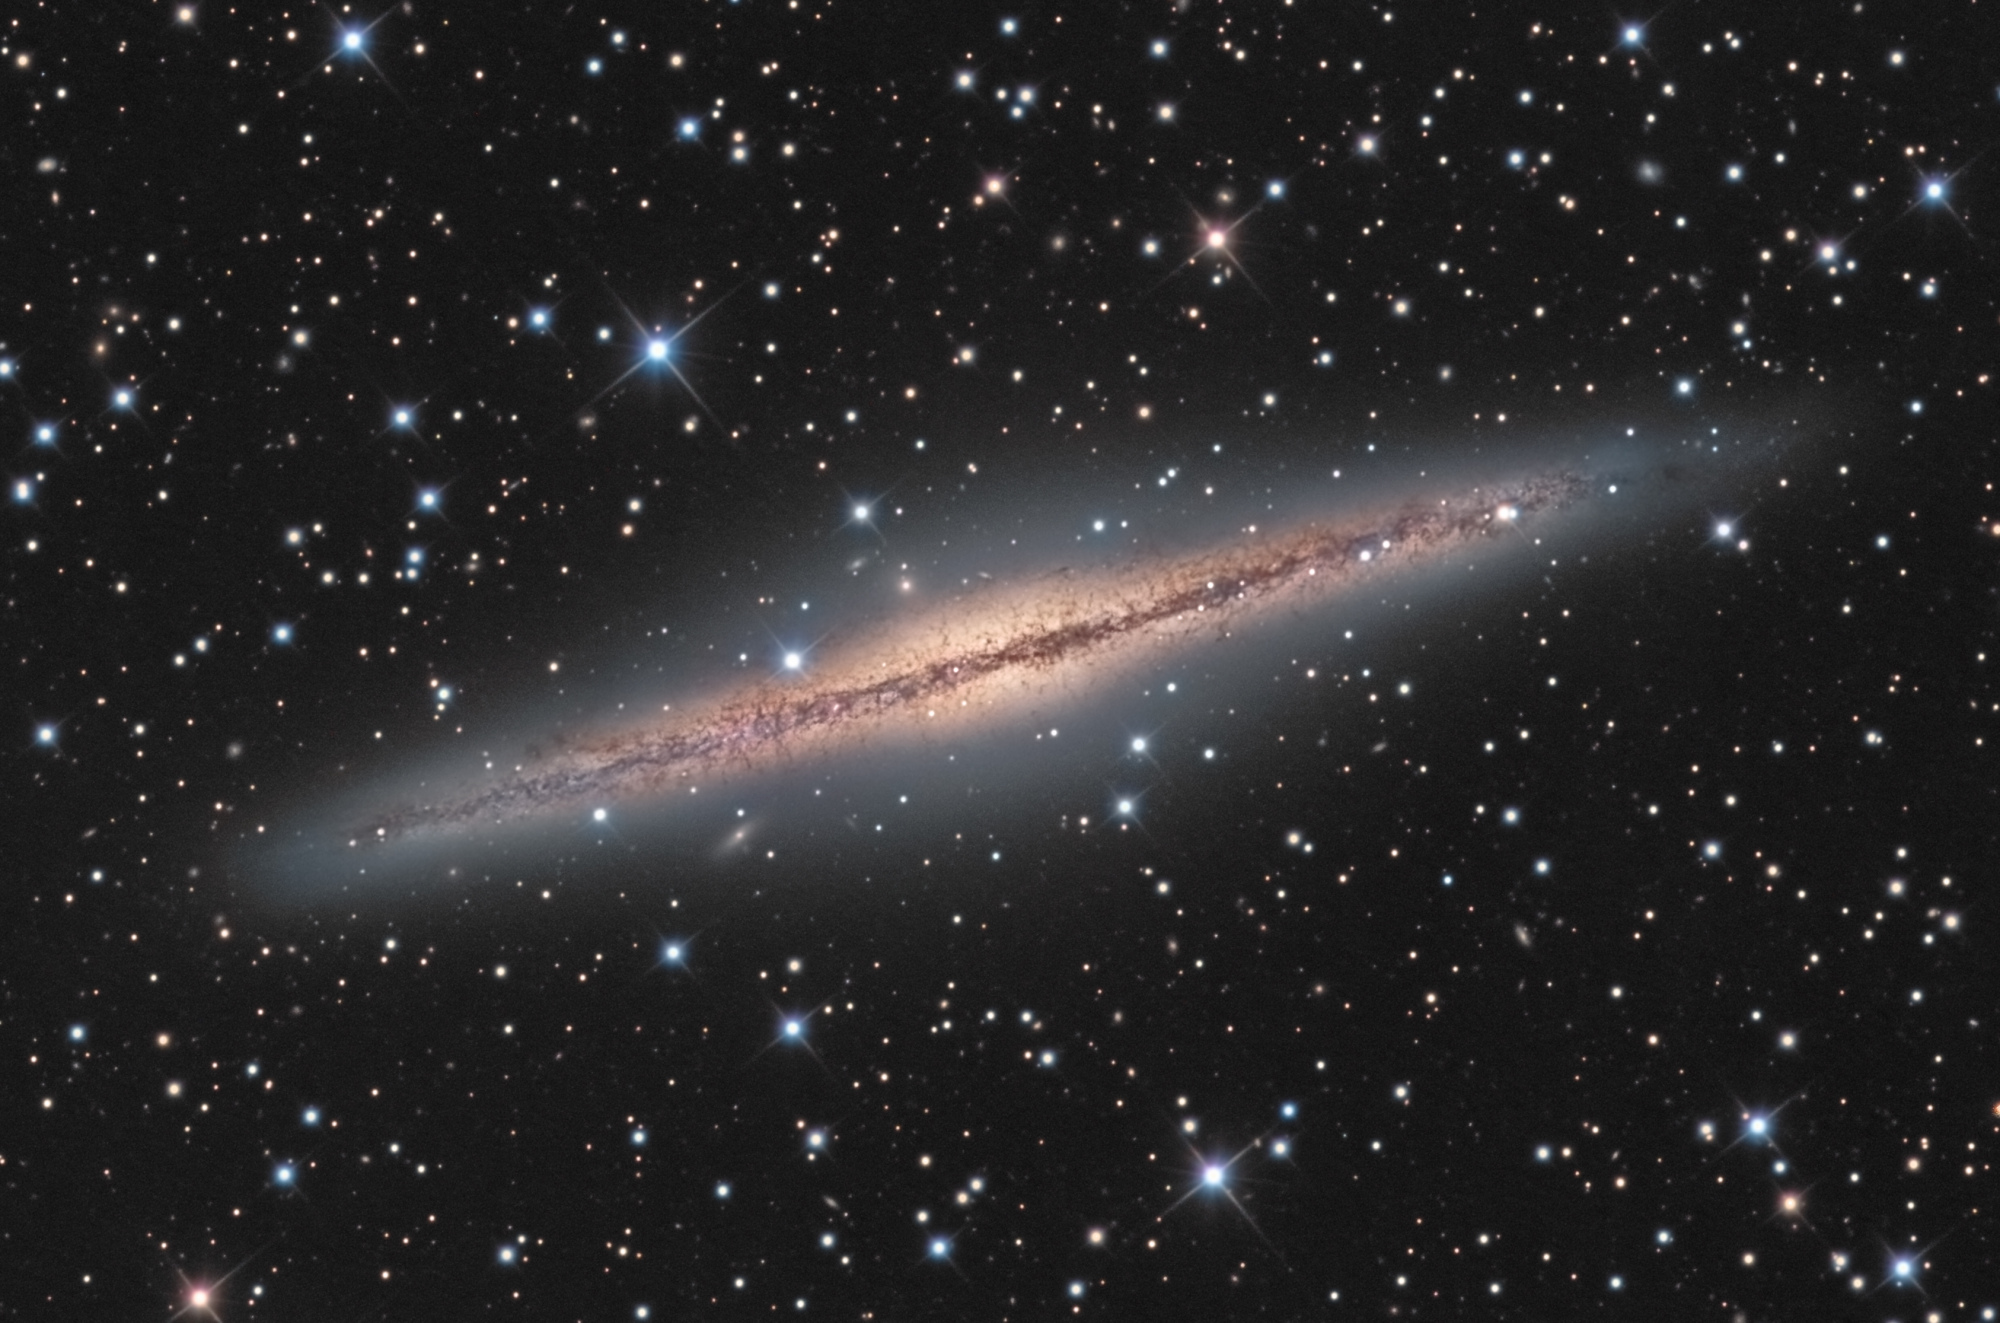 NGC-891-final2-crop-web.thumb.jpg.9a6e5bfa4ac17568f6b9584fc2b5b8ad.jpg